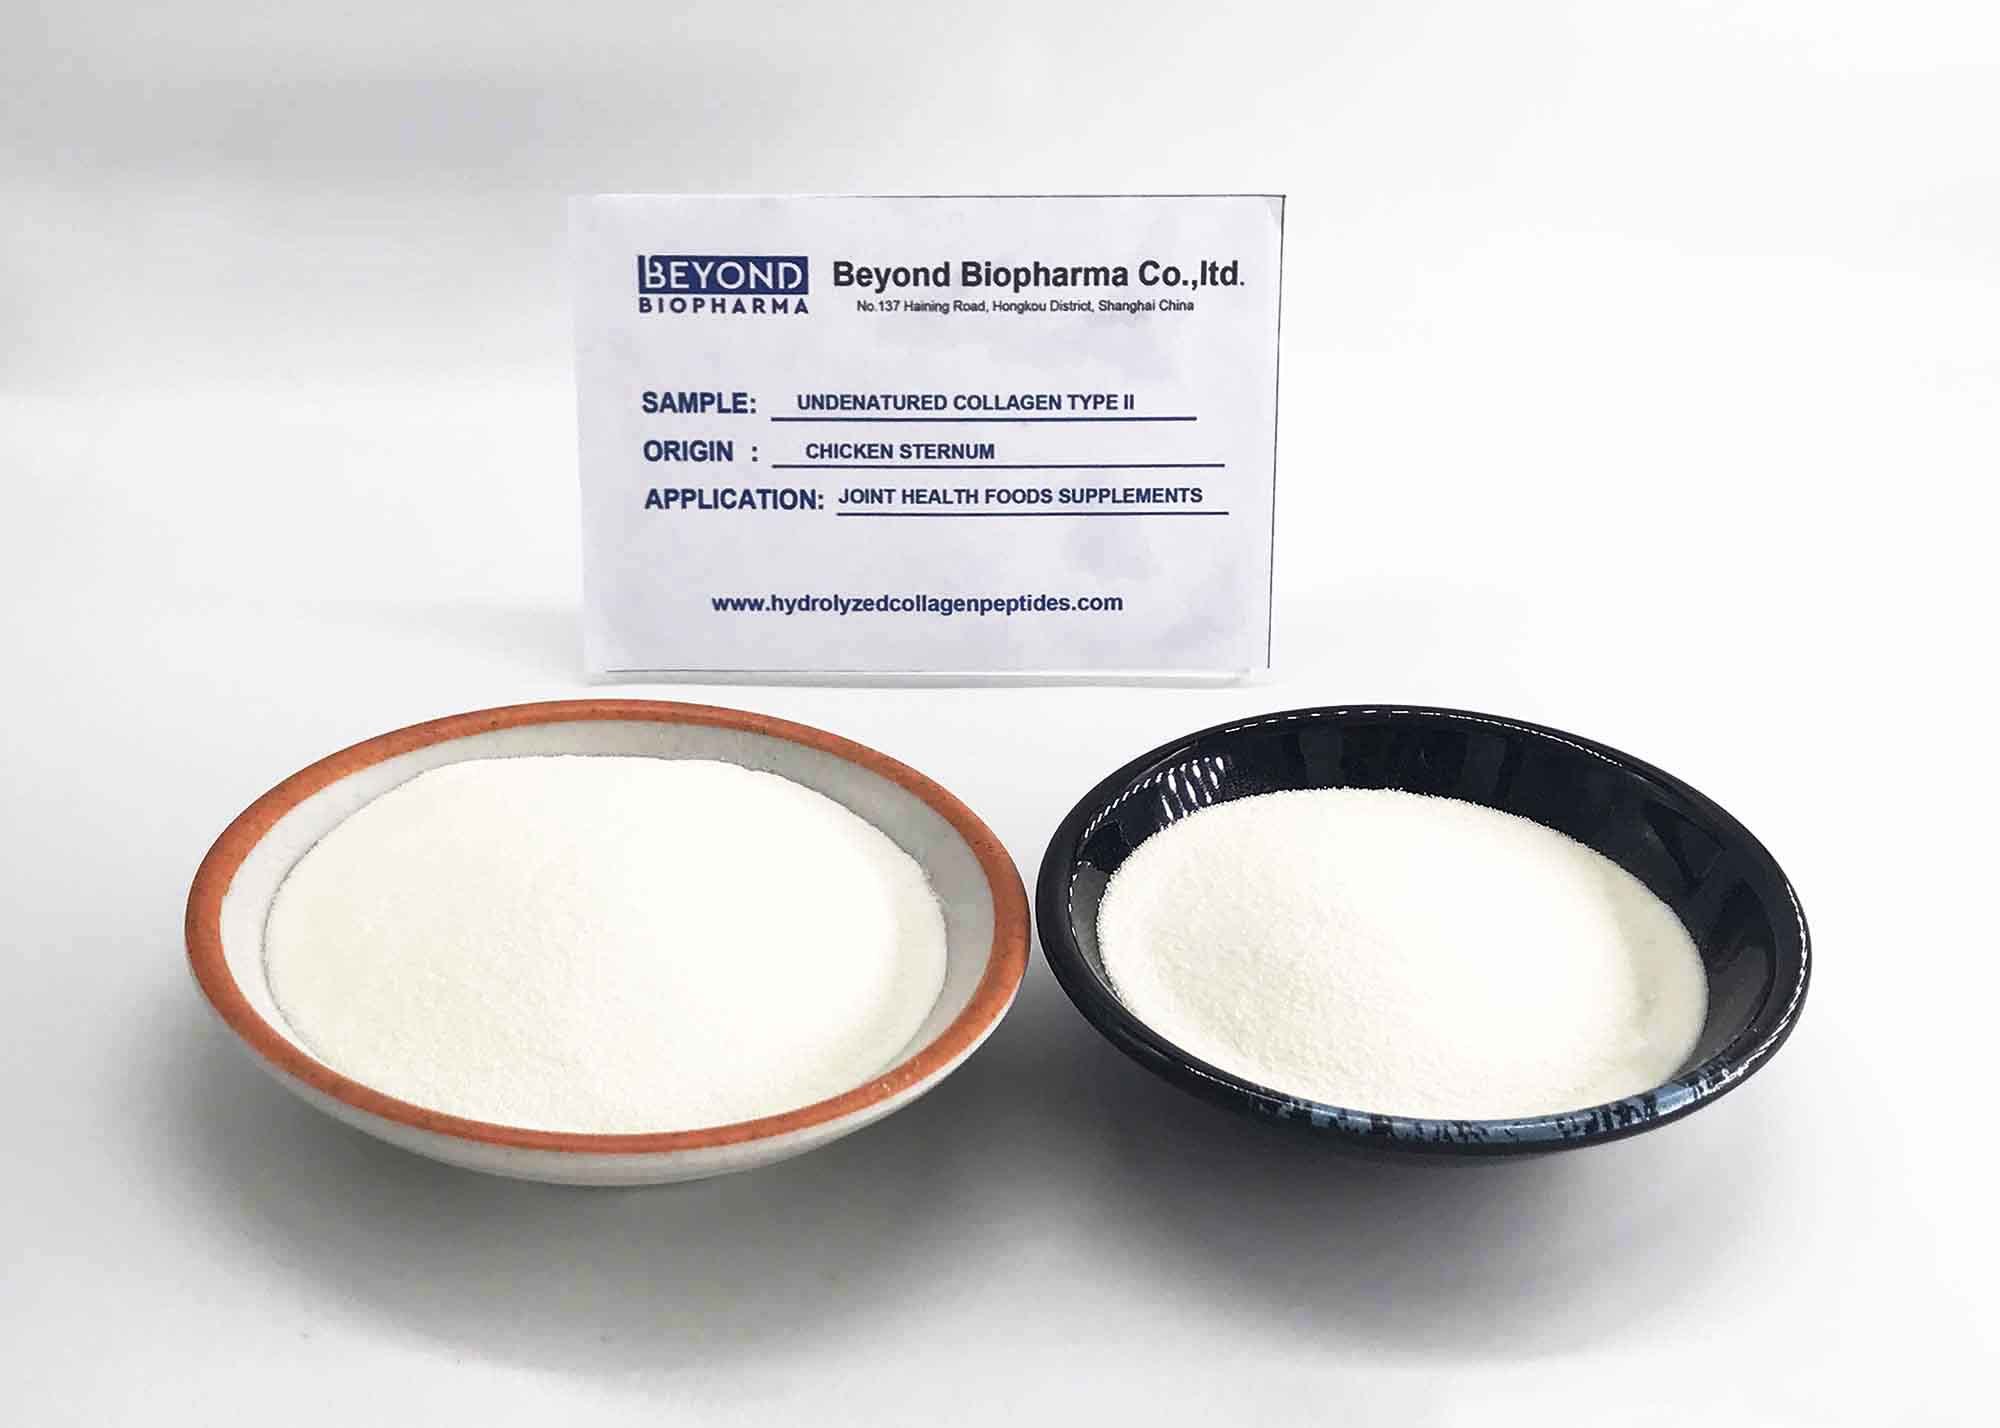 Purified 10% Undenatured Chicken Collagen Powder Type II from Chicken Sternum